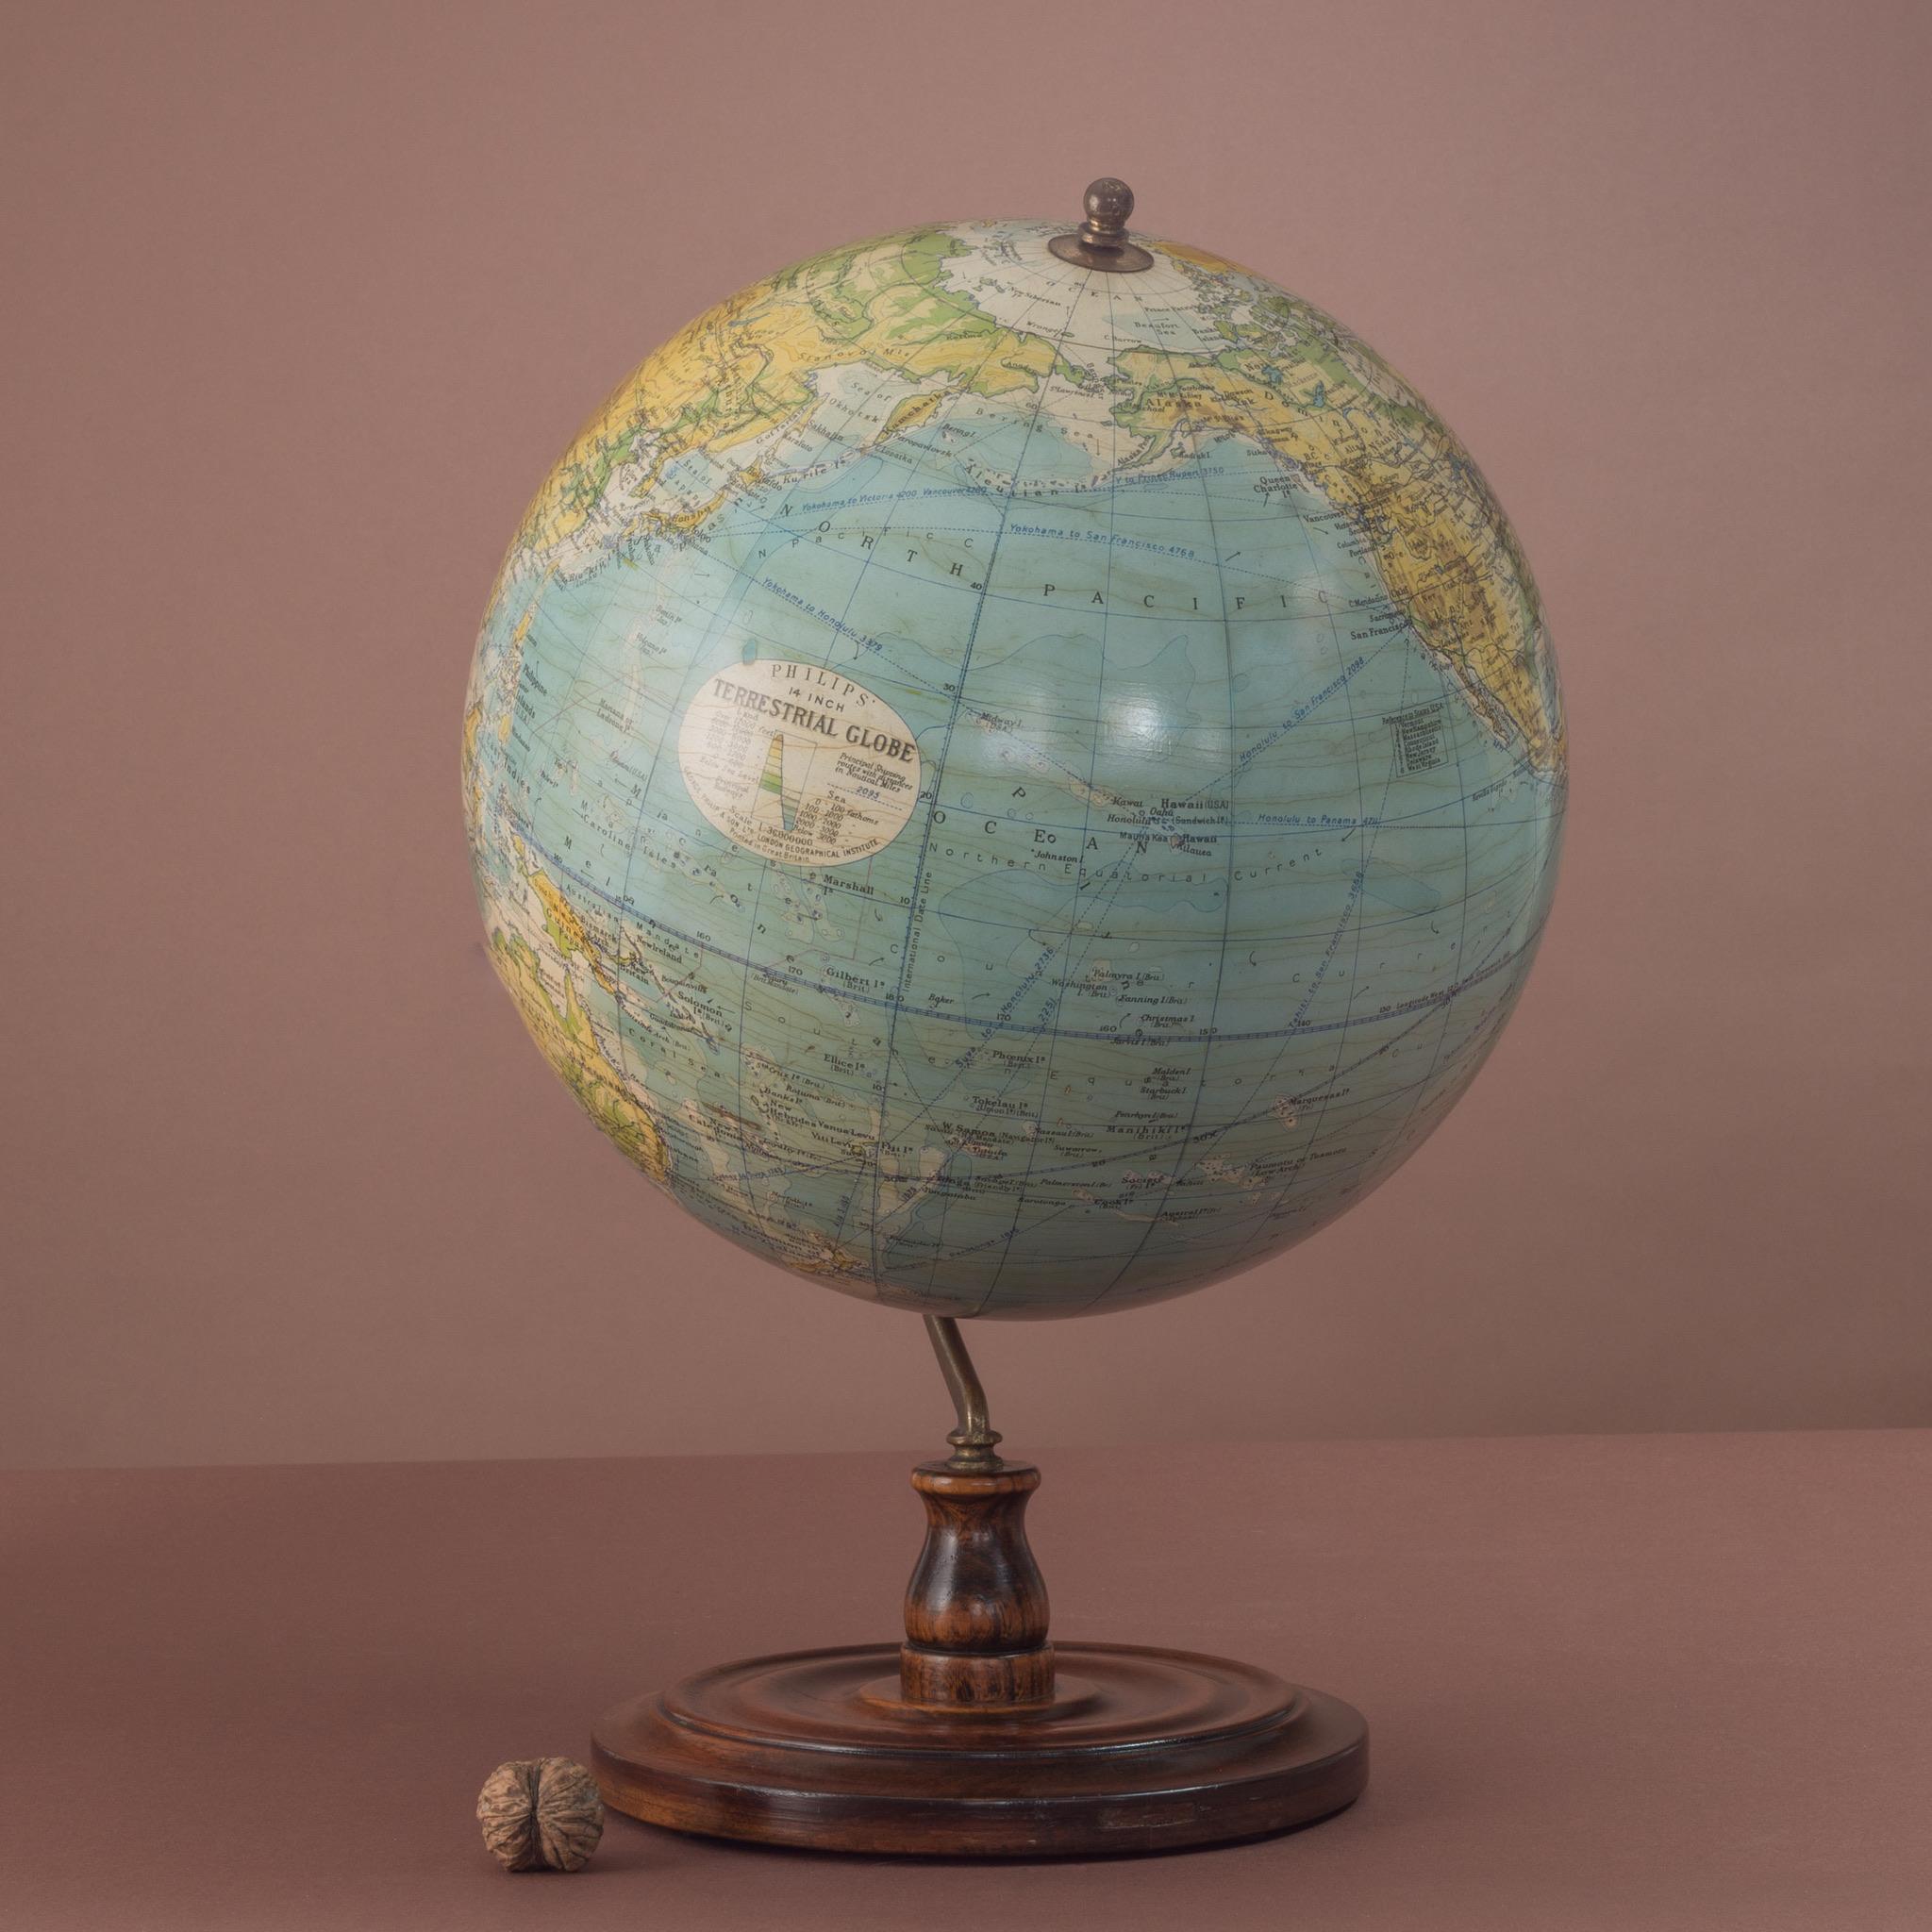 Un globe terrestre de 14 pouces en gesso par Philips de Londres sur une monture inclinée en laiton attachée à une base originale en bois tourné avec des axes sécurisés au sommet par un fleuron en laiton. Porte le cachet du ministère de l'Air sur le